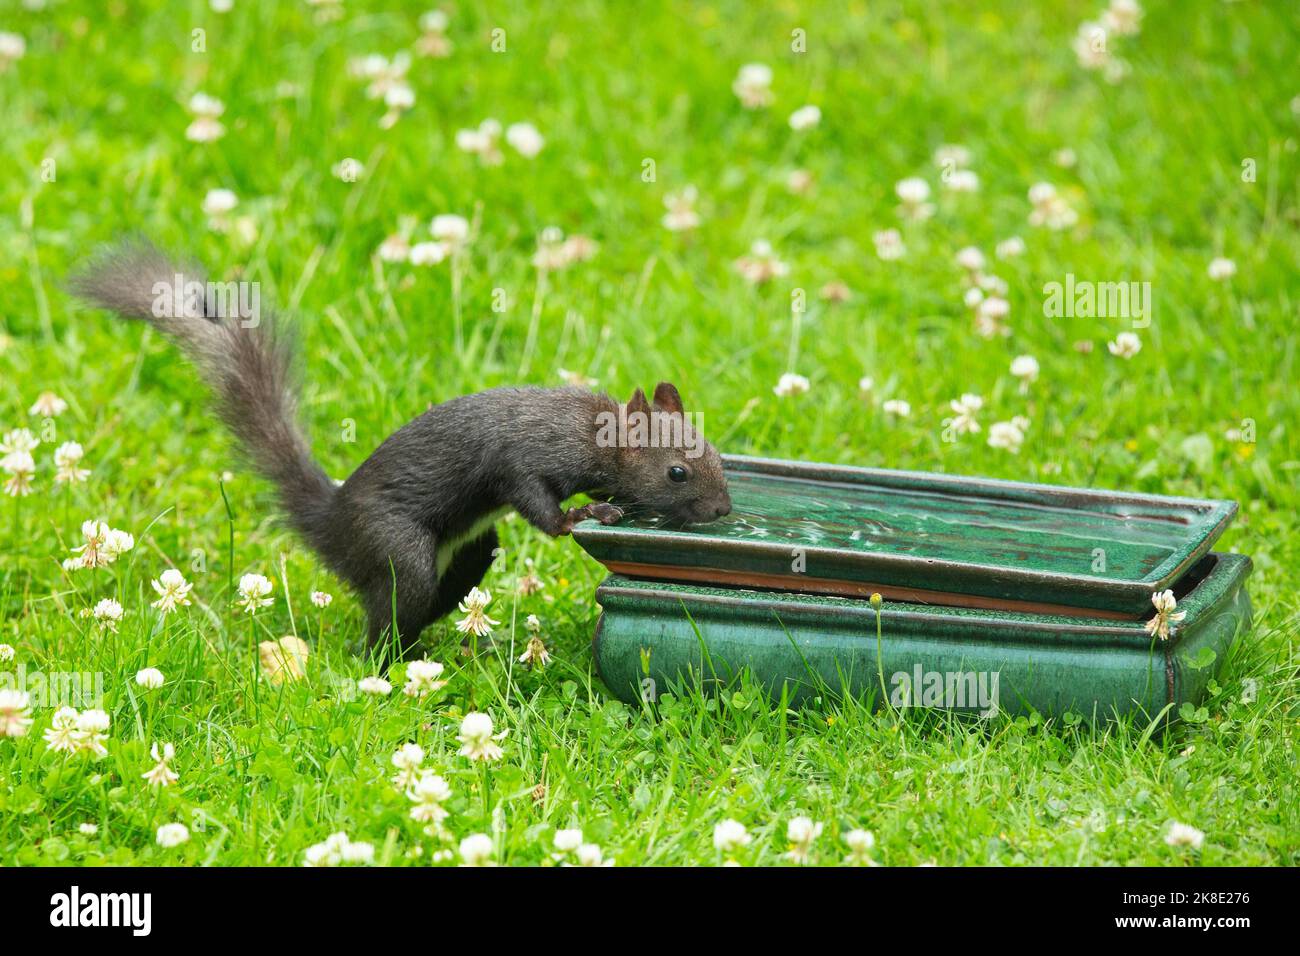 Eichhörnchen, das mit Wasser im grünen Gras am Tisch steht und gerade trinkt Stockfoto